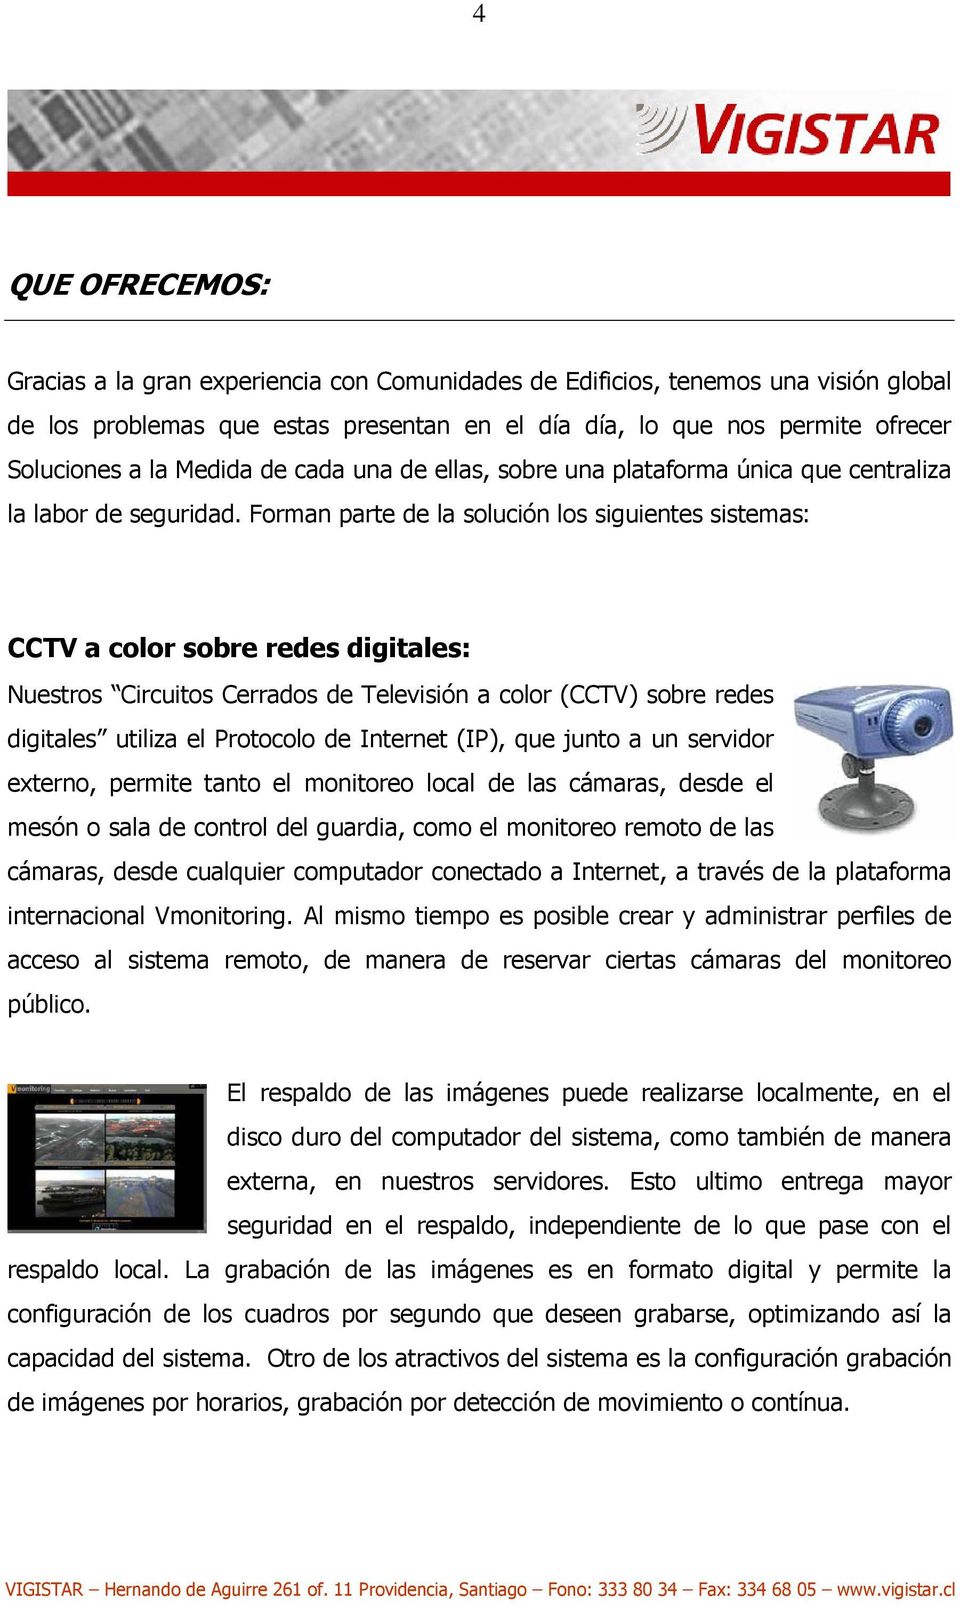 Forman parte de la solución los siguientes sistemas: CCTV a color sobre redes digitales: Nuestros Circuitos Cerrados de Televisión a color (CCTV) sobre redes digitales utiliza el Protocolo de